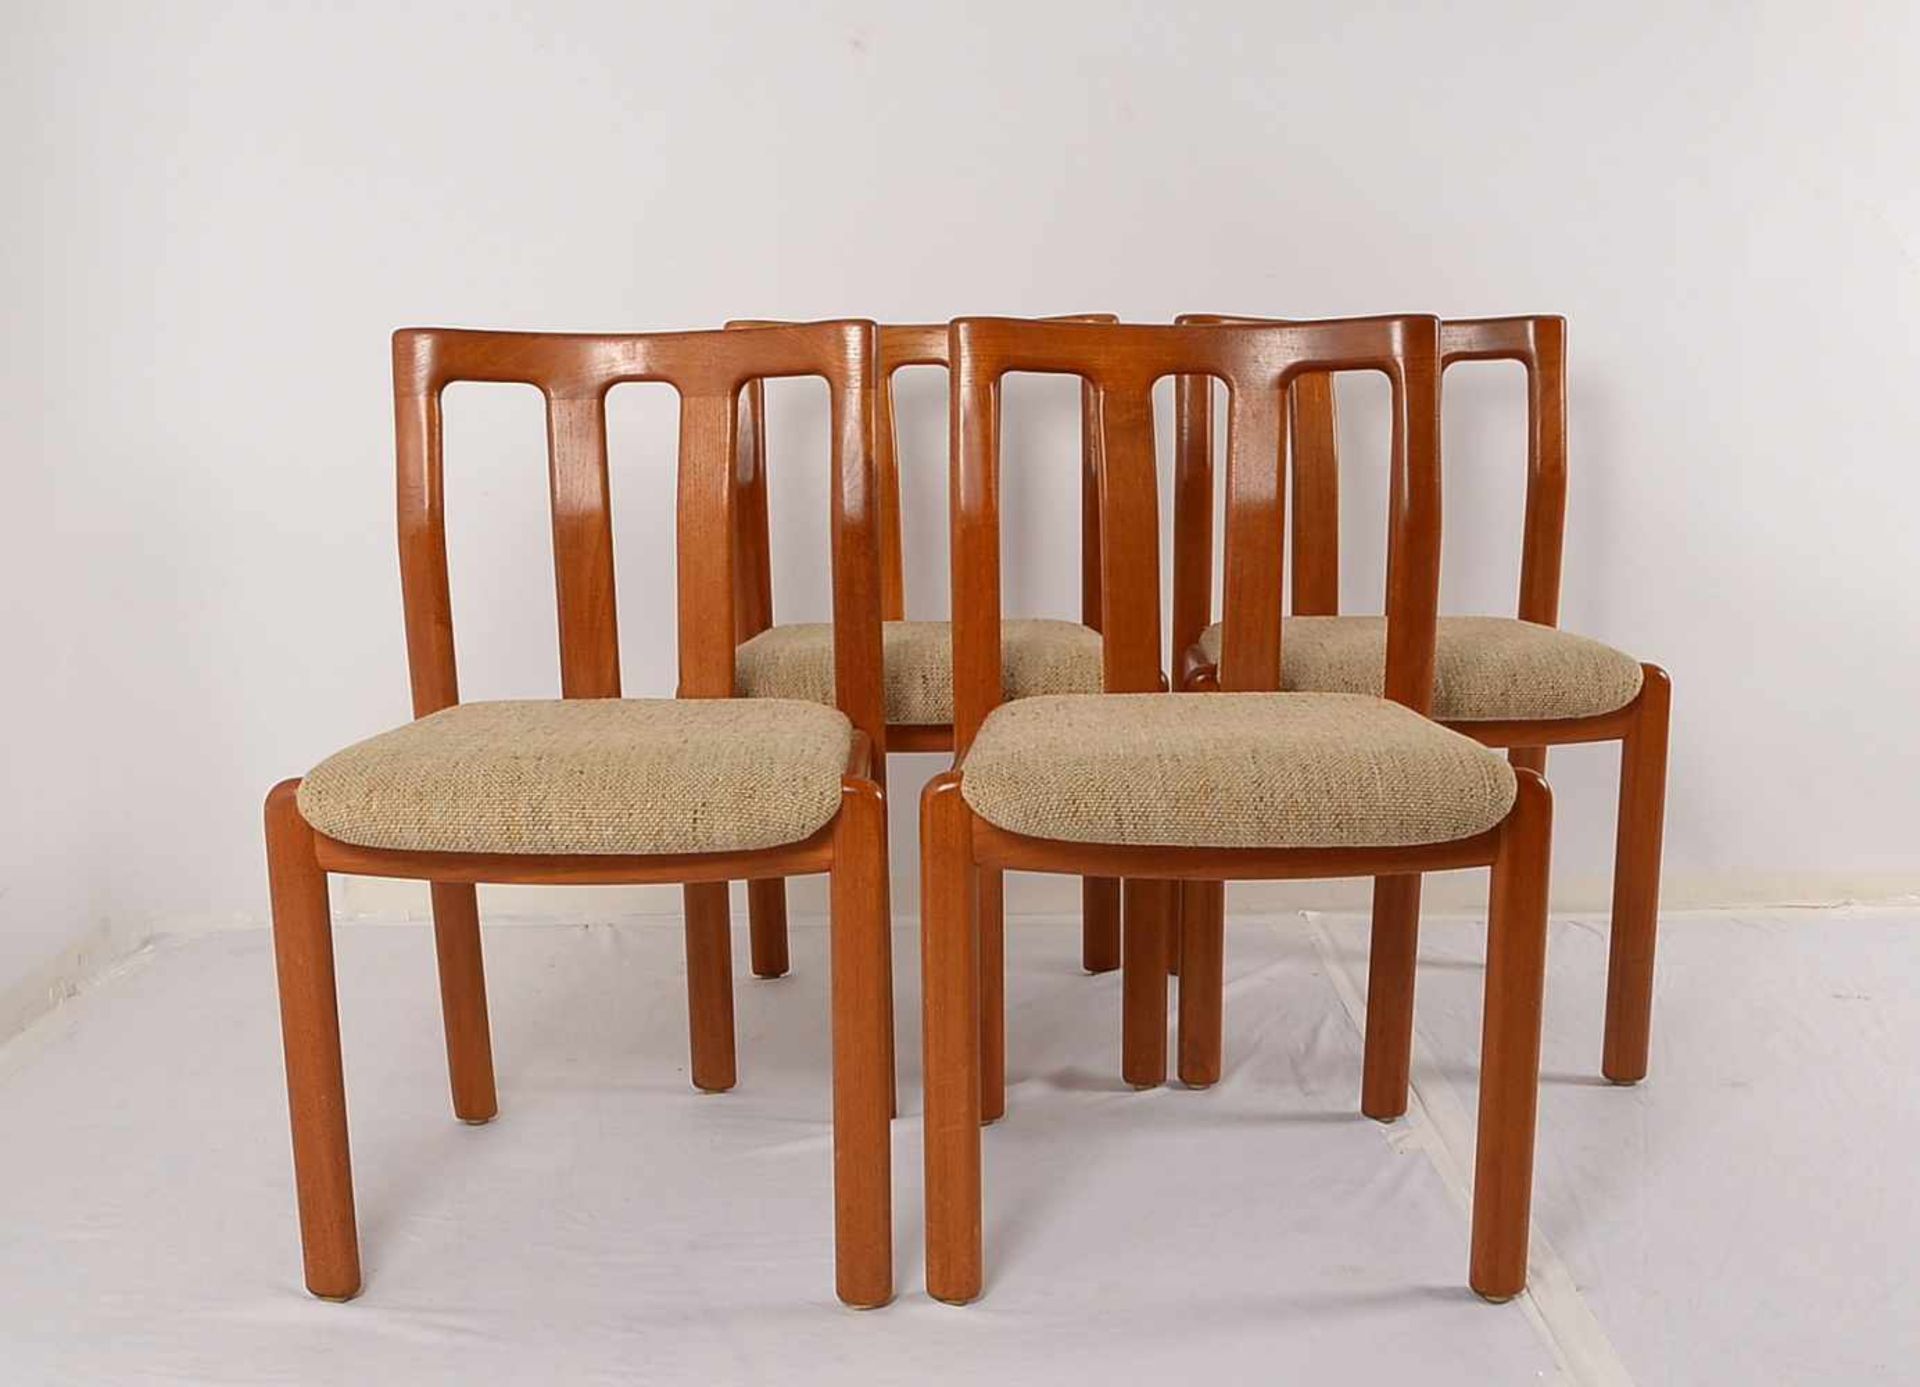 Dyrlund, Satz Stühle, Teakholz, gepolstert, 4 Stück; Höhe 80 cm, Breite 50 cm, Sitzhöhe 42 cm - Bild 2 aus 2